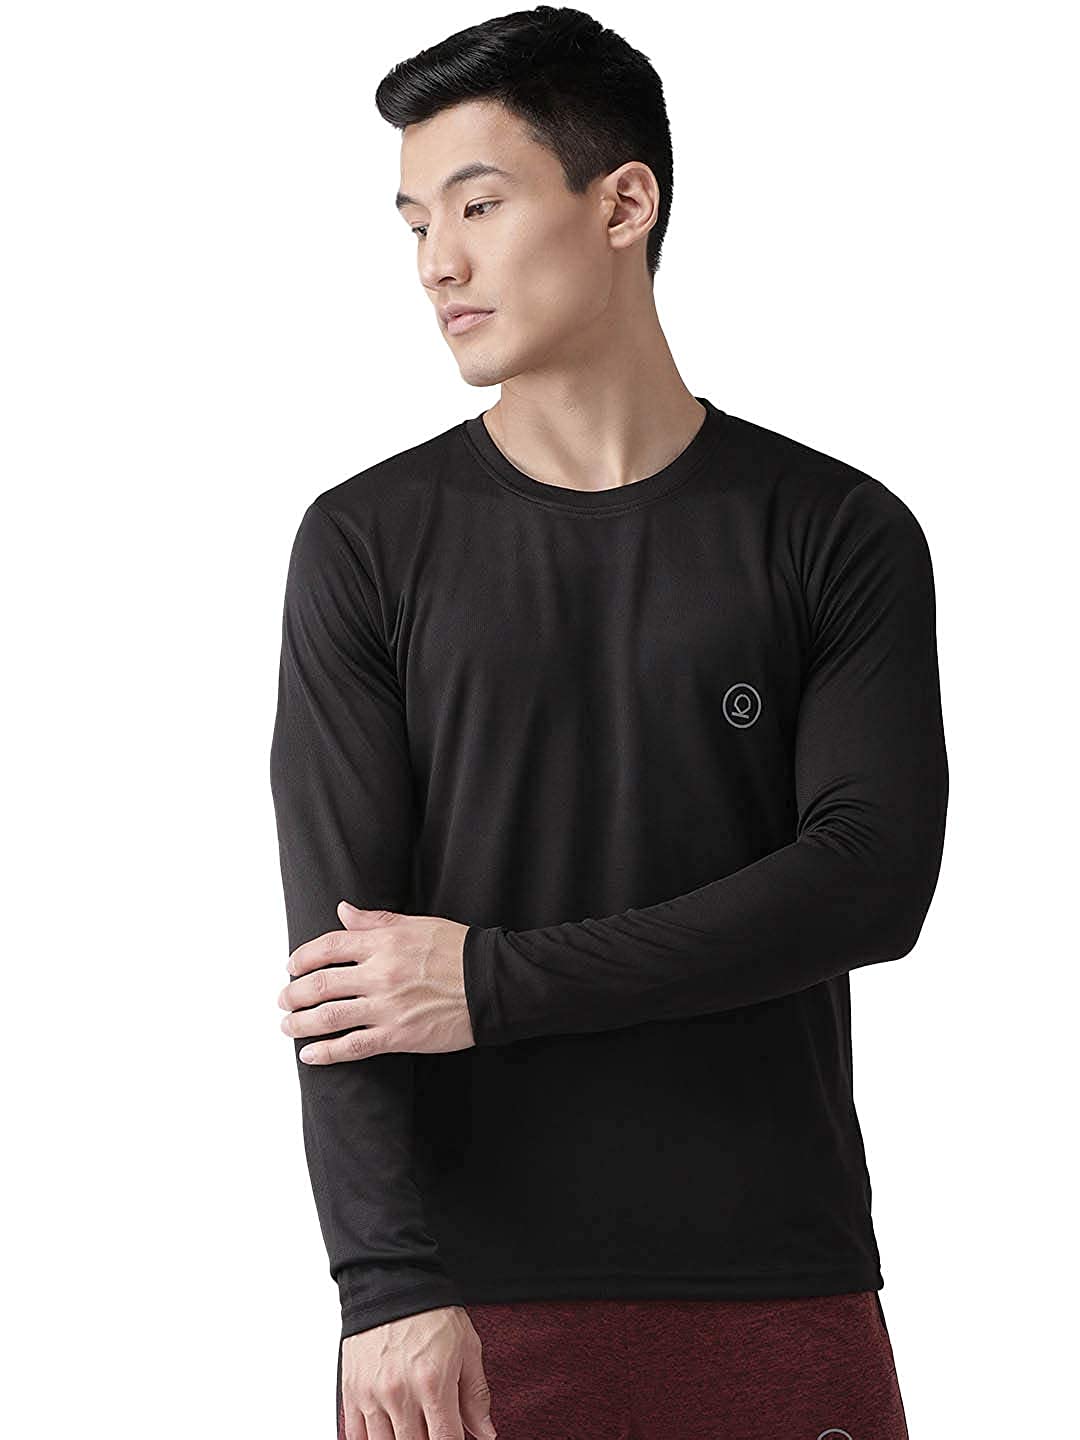 CHKOKKO Men's Regular Fit Full Sleeves Gym T-Shirt